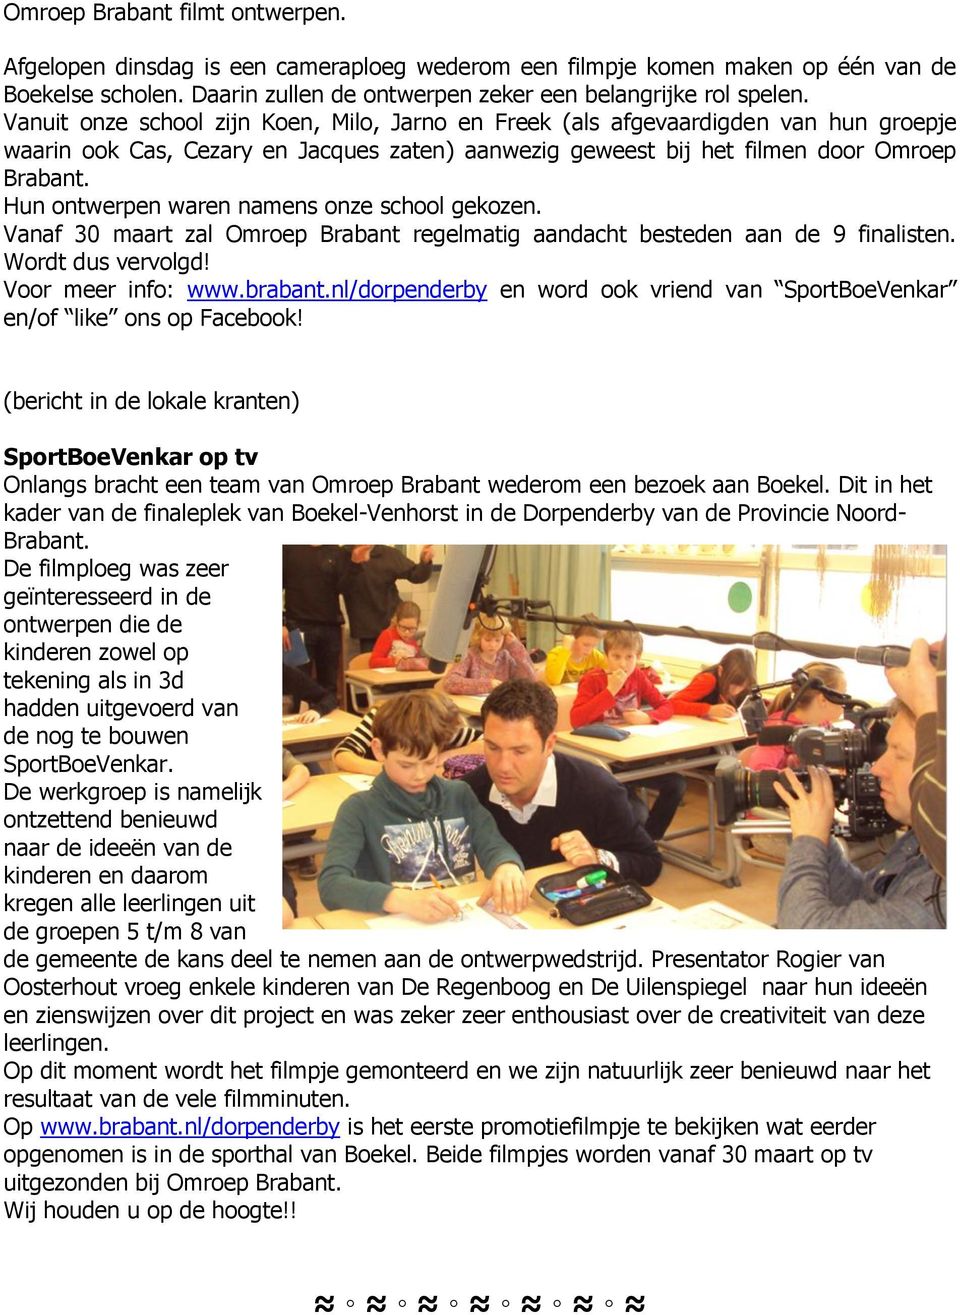 Hun ontwerpen waren namens onze school gekozen. Vanaf 30 maart zal Omroep Brabant regelmatig aandacht besteden aan de 9 finalisten. Wordt dus vervolgd! Voor meer info: www.brabant.